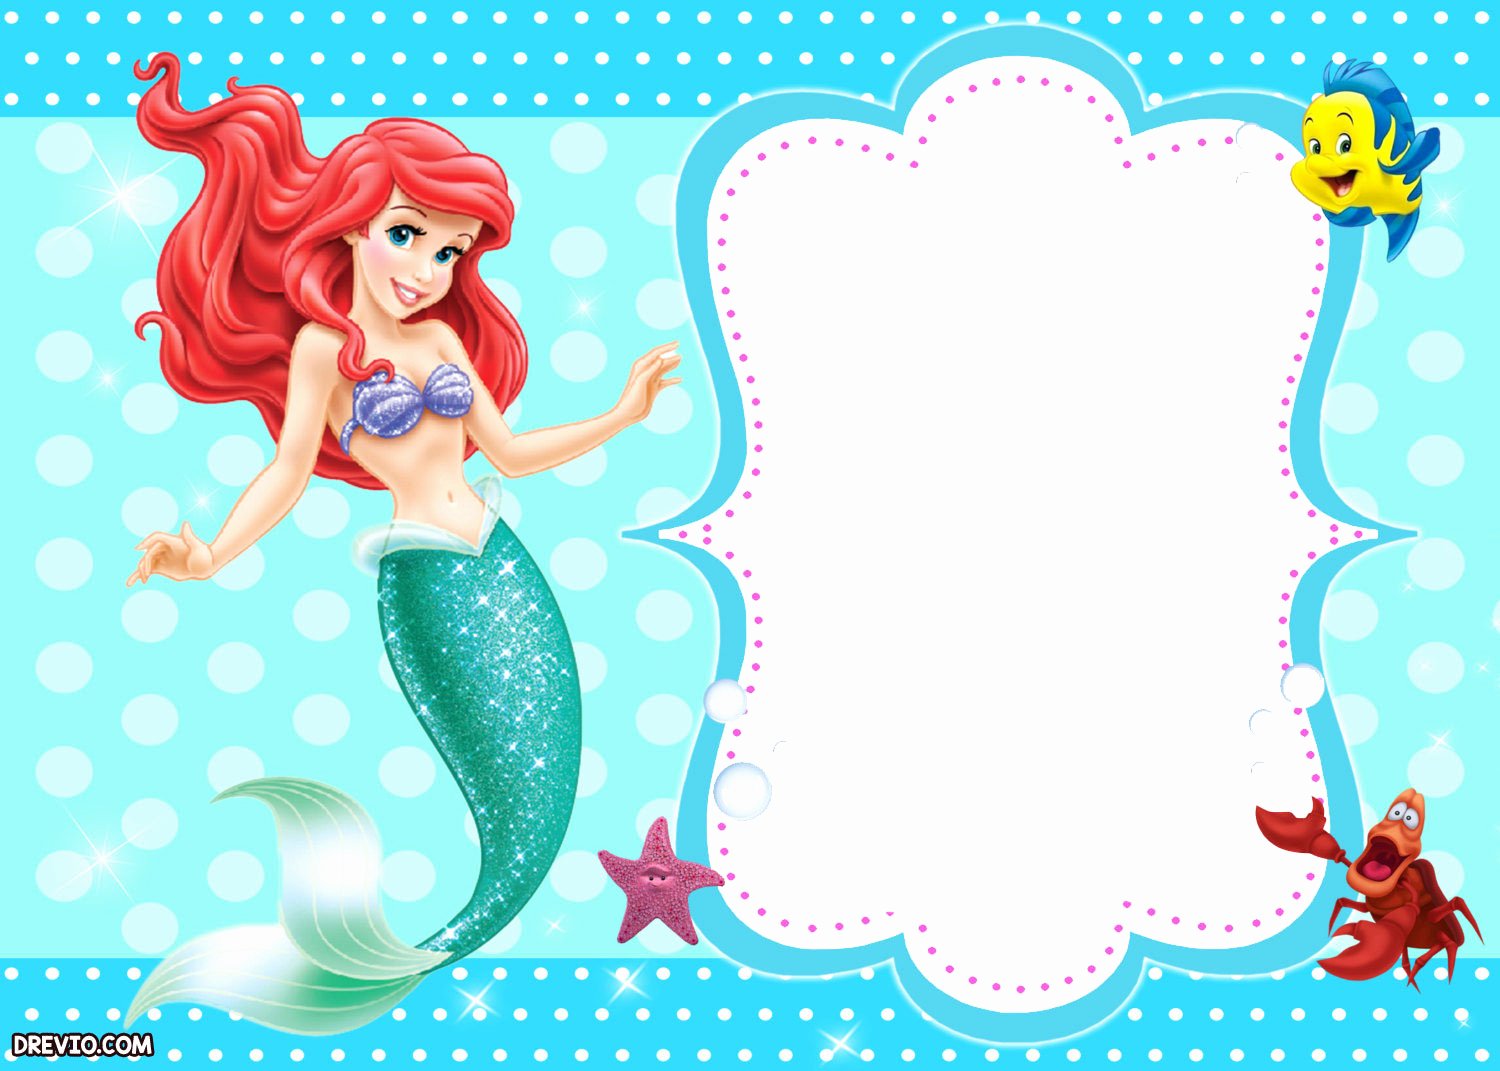 Updated Free Printable Ariel the Little Mermaid